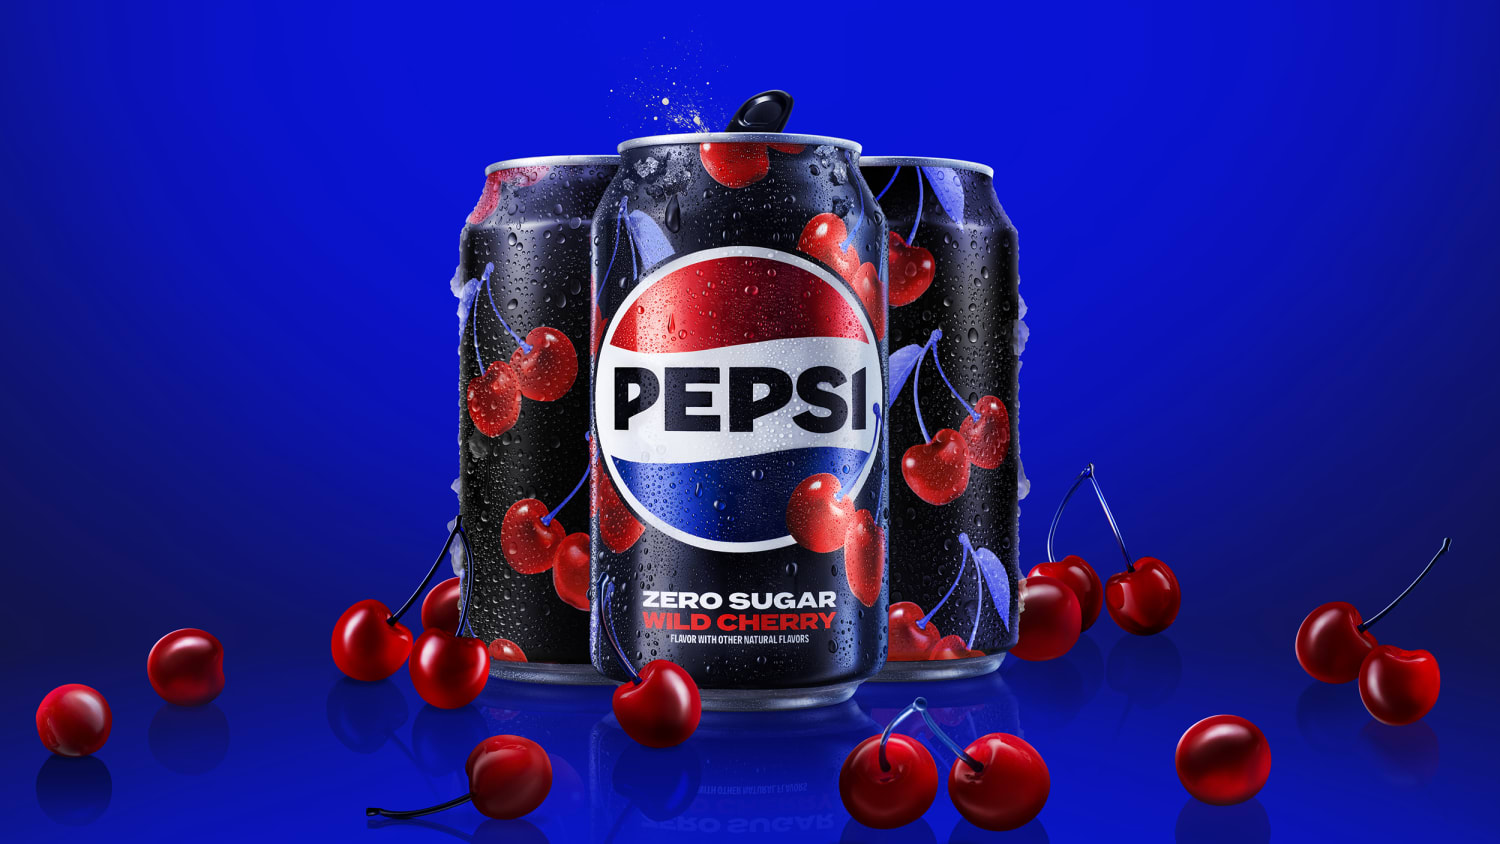 Pepsi Can Design 2022